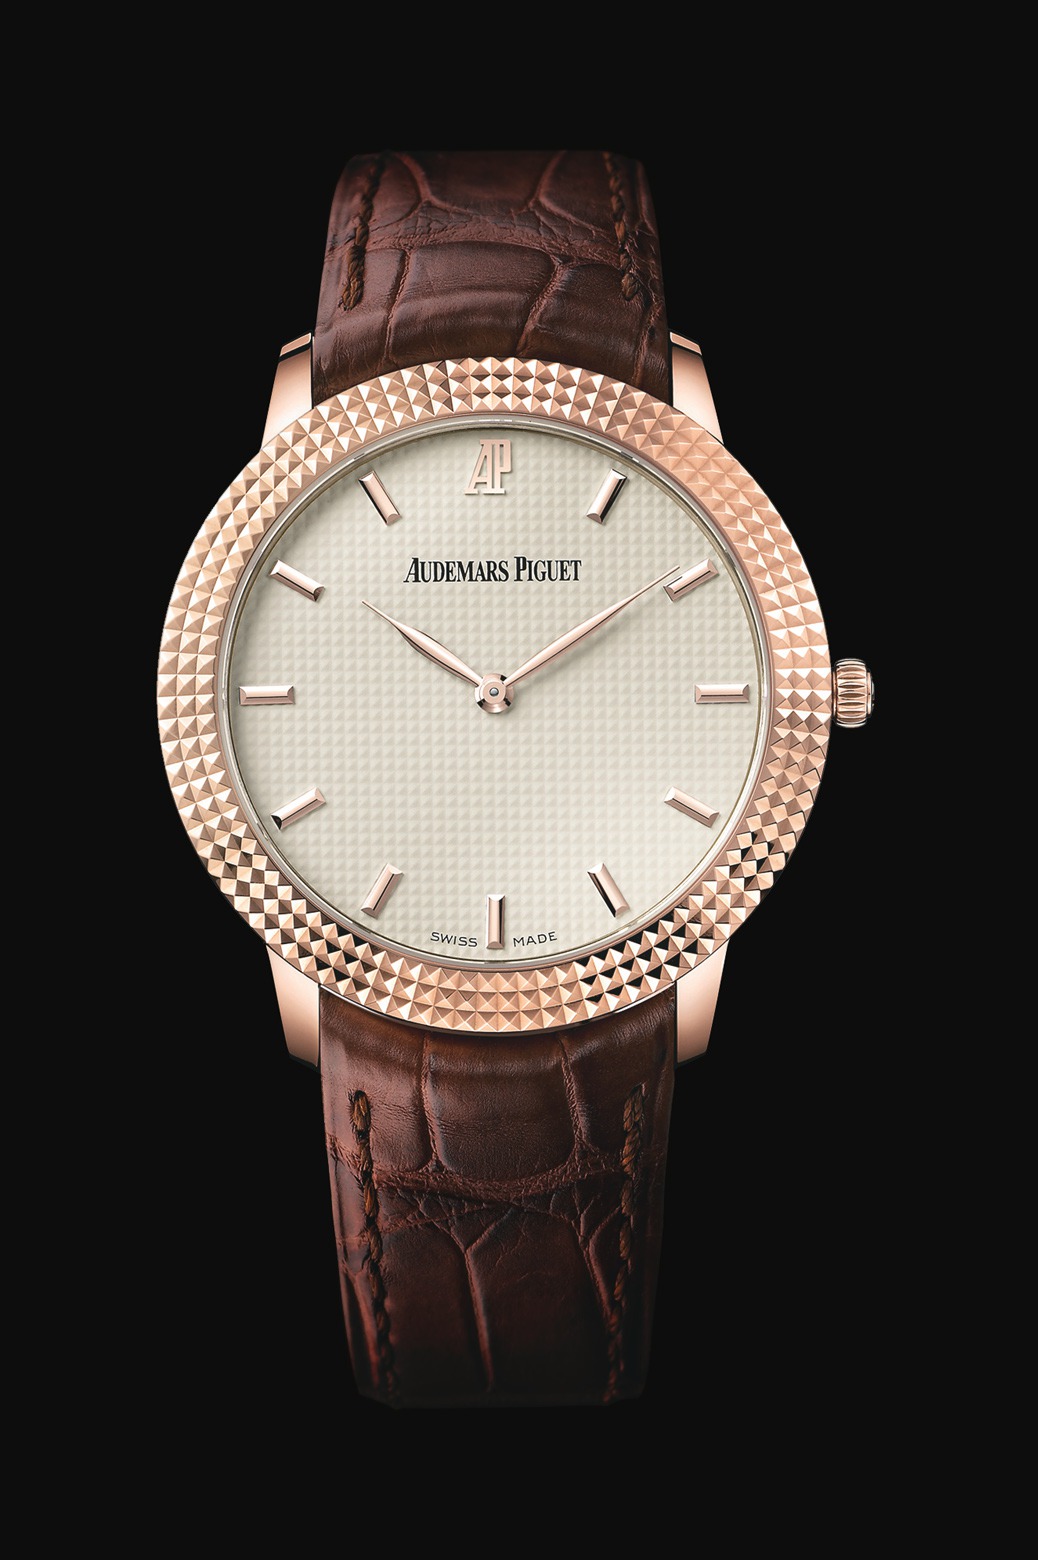 Audemars Piguet Classic Clou de Paris Pink Gold watch REF: 15163OR.GG.A088CR.01